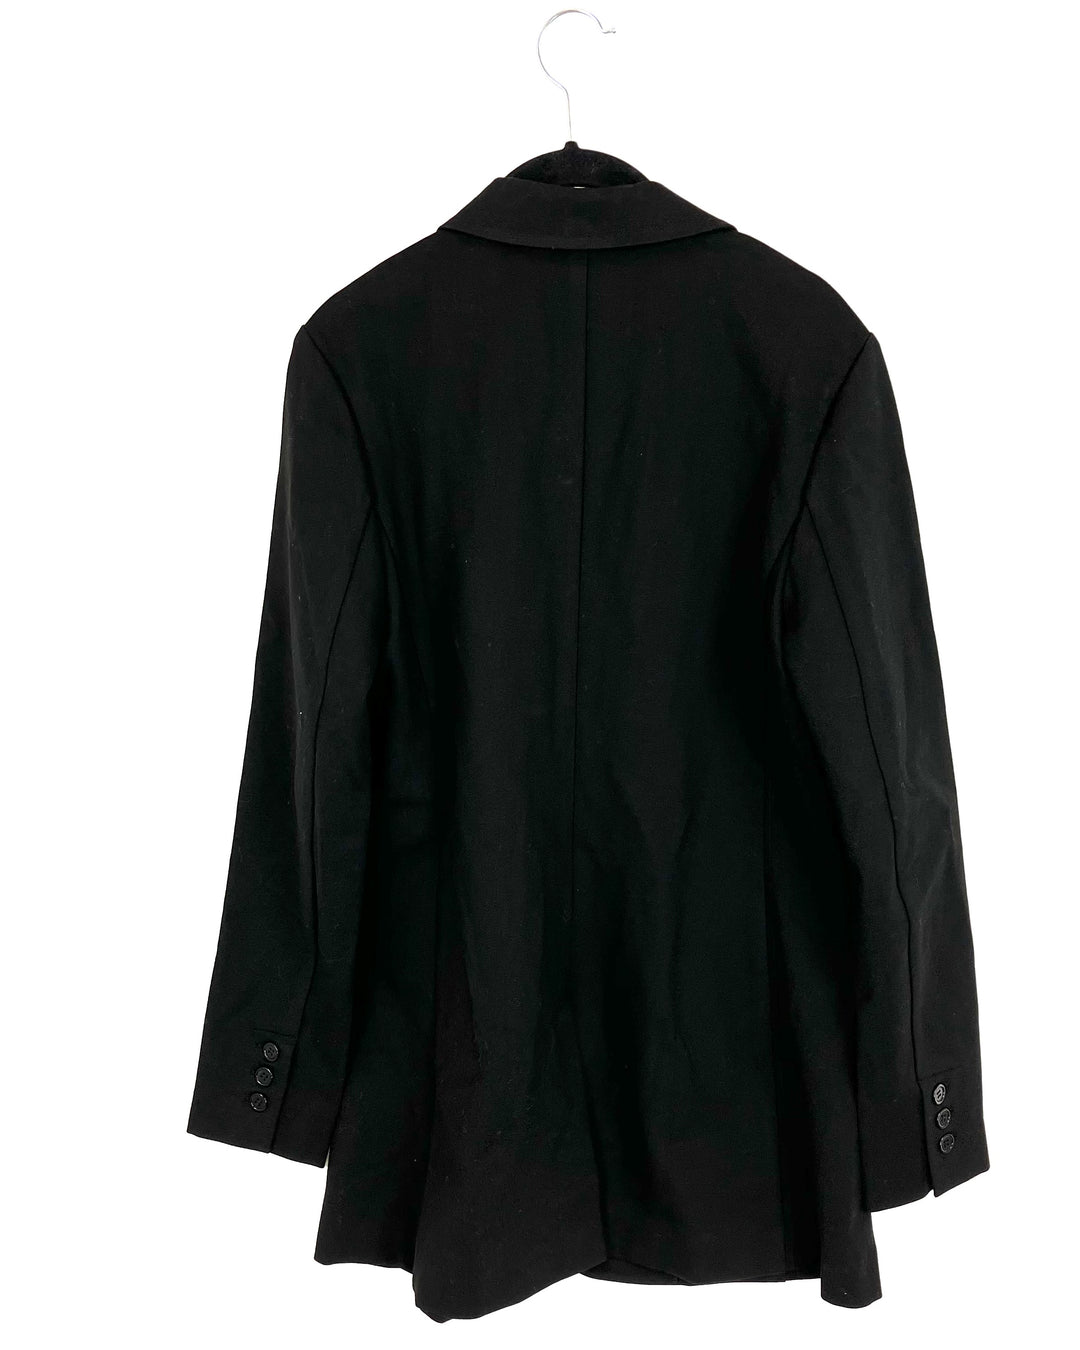 Black Long Blazer Stretch Blazer - Size 4/6